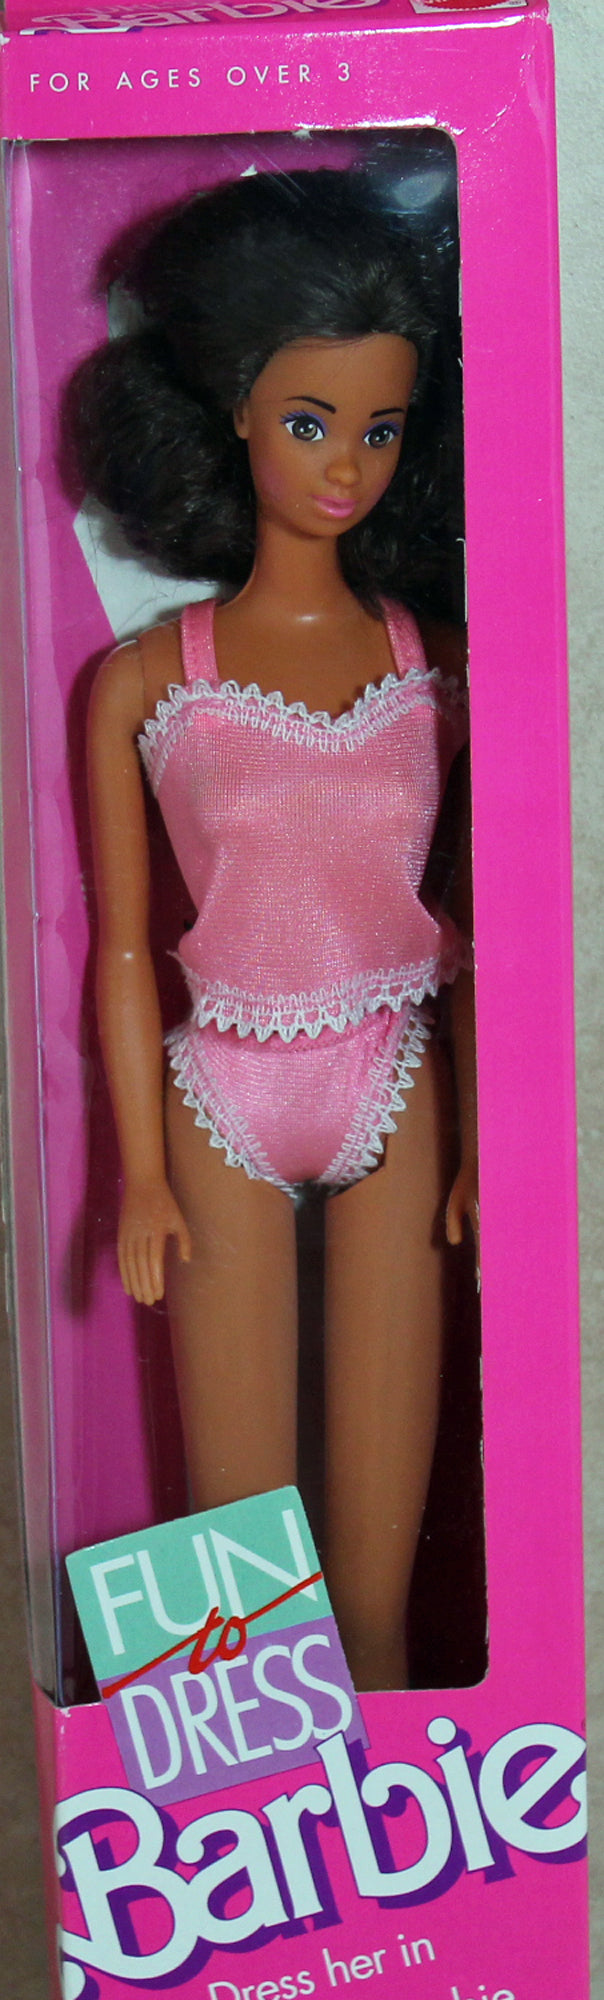 1989 Fun To Dress Barbie (7373)